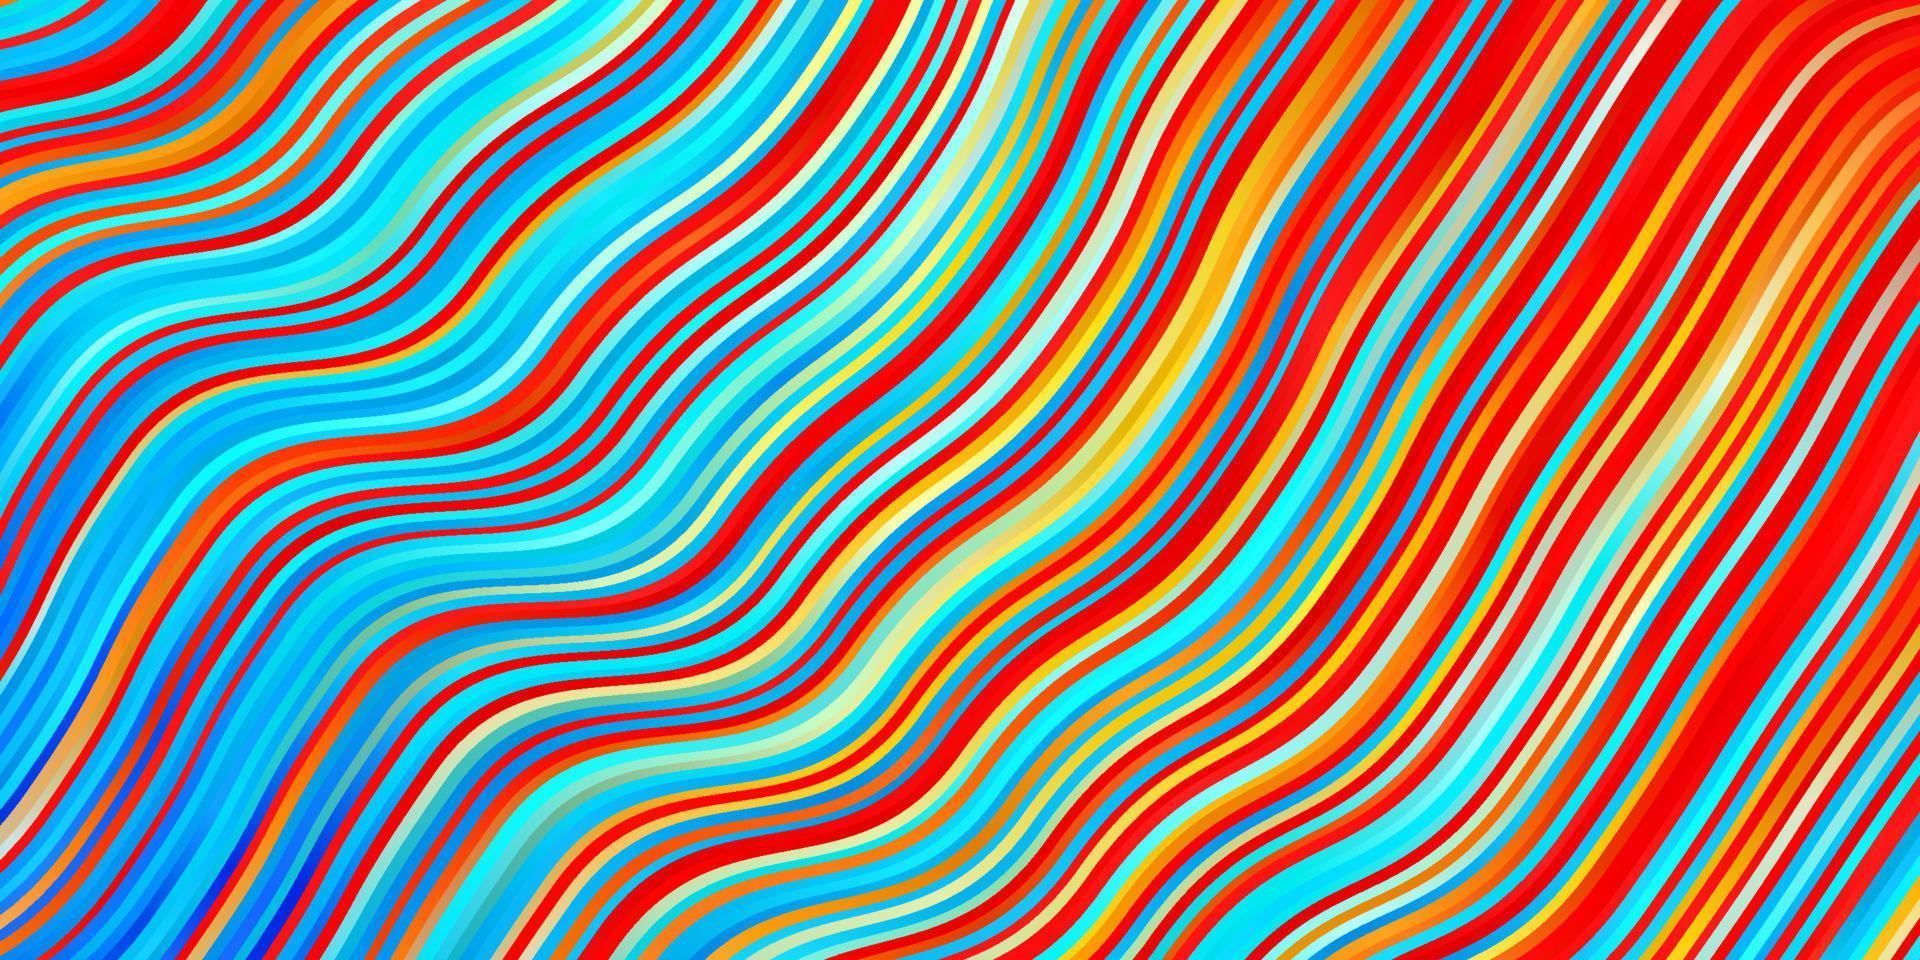 lichtblauw, rood vector sjabloon met wrange lijnen.